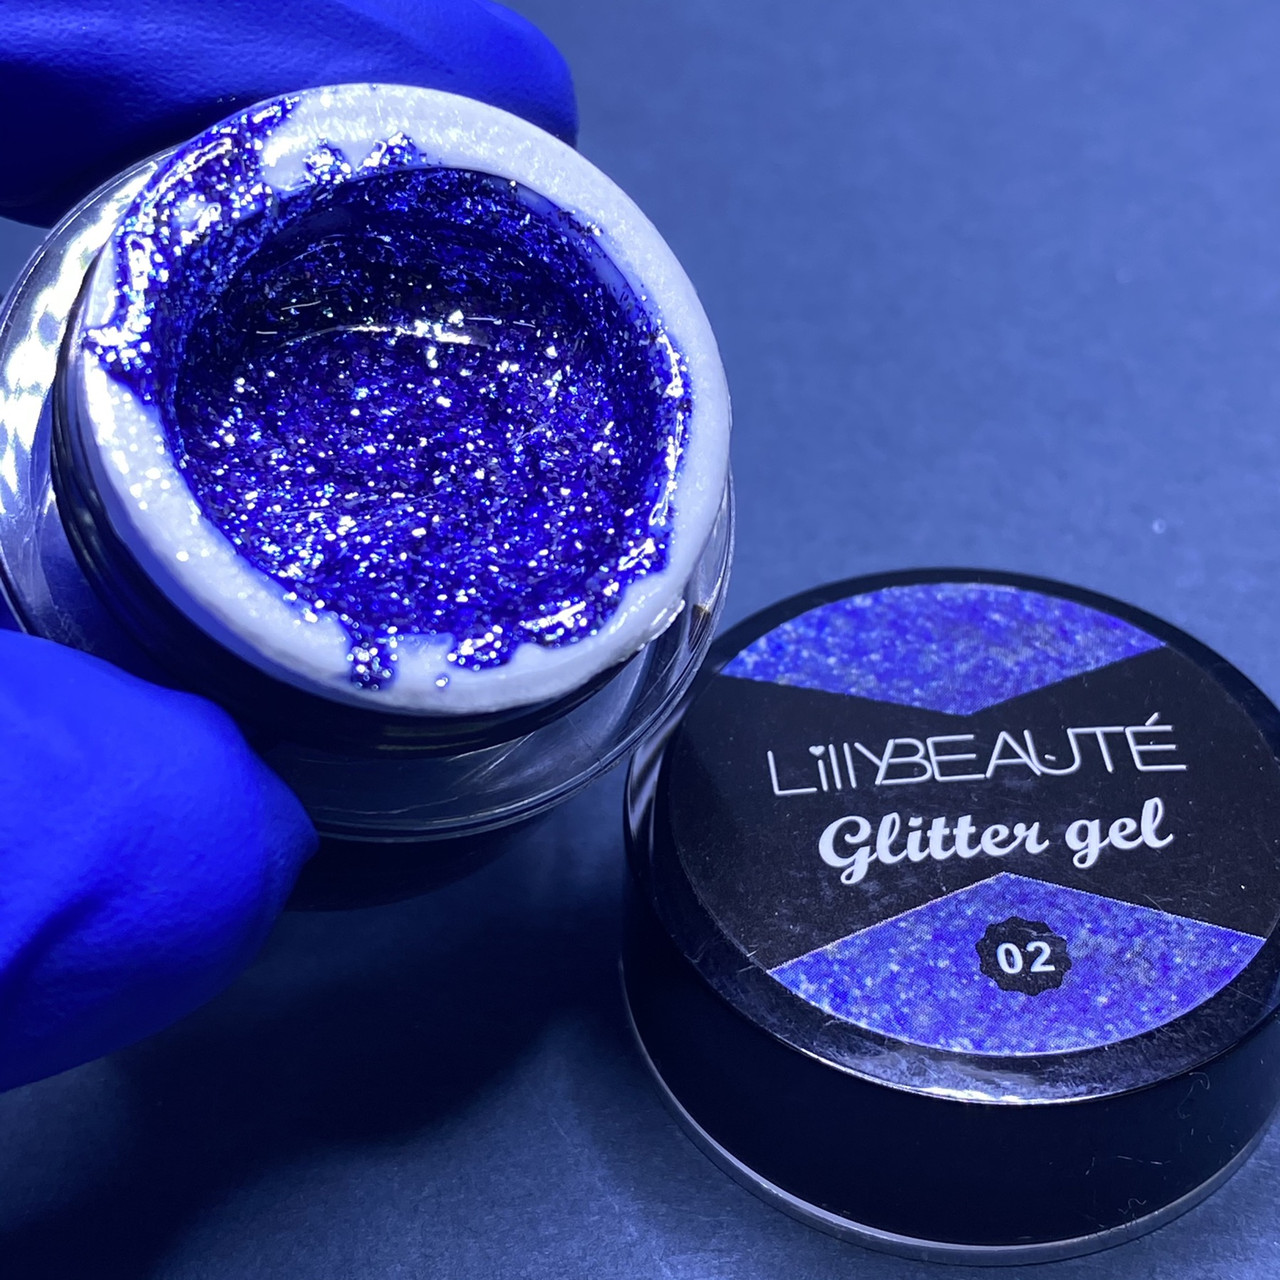 Гліттер-гель для нігтів Lilly Beaute №02, синій